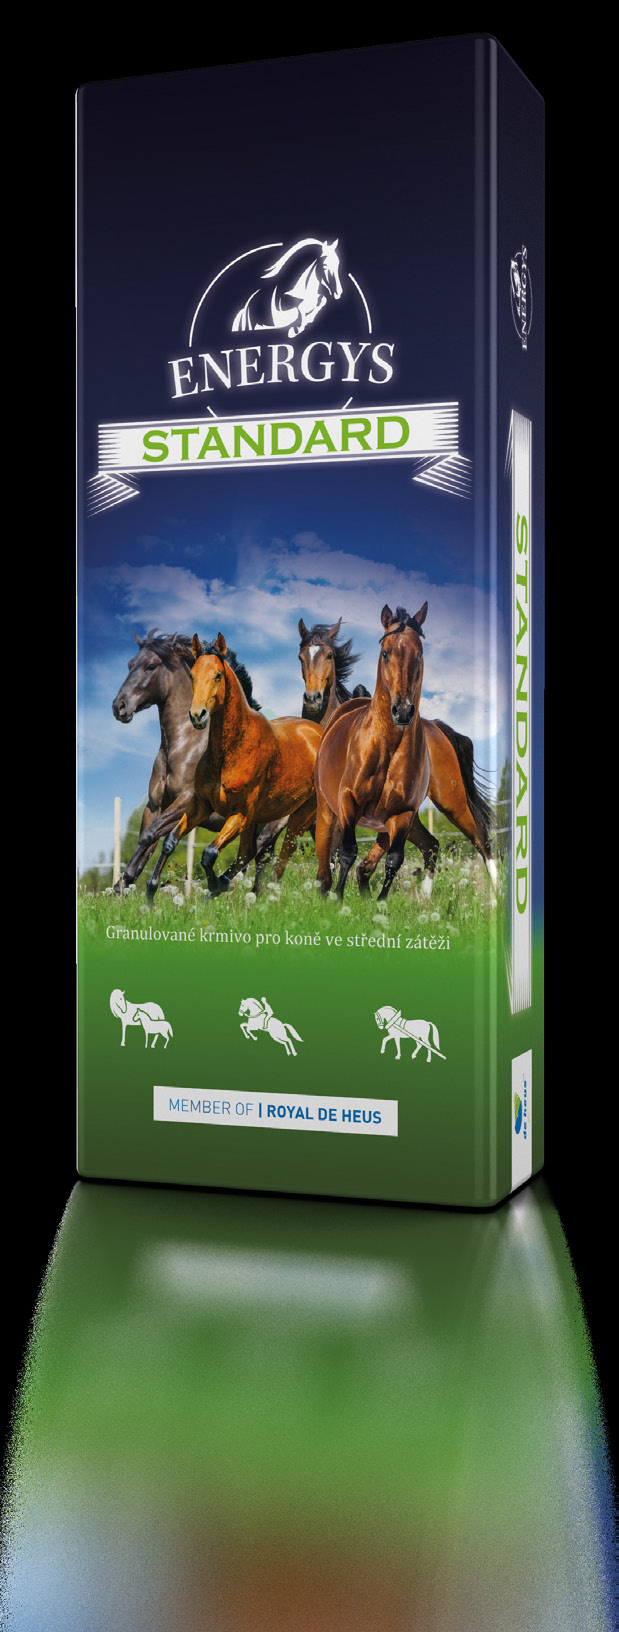 STNDRD Granulované krmivo pro koně ve střední zátěži Krmivo pro všestranné využití s vysokým podílem melasy, pro koně ve střední zátěži.